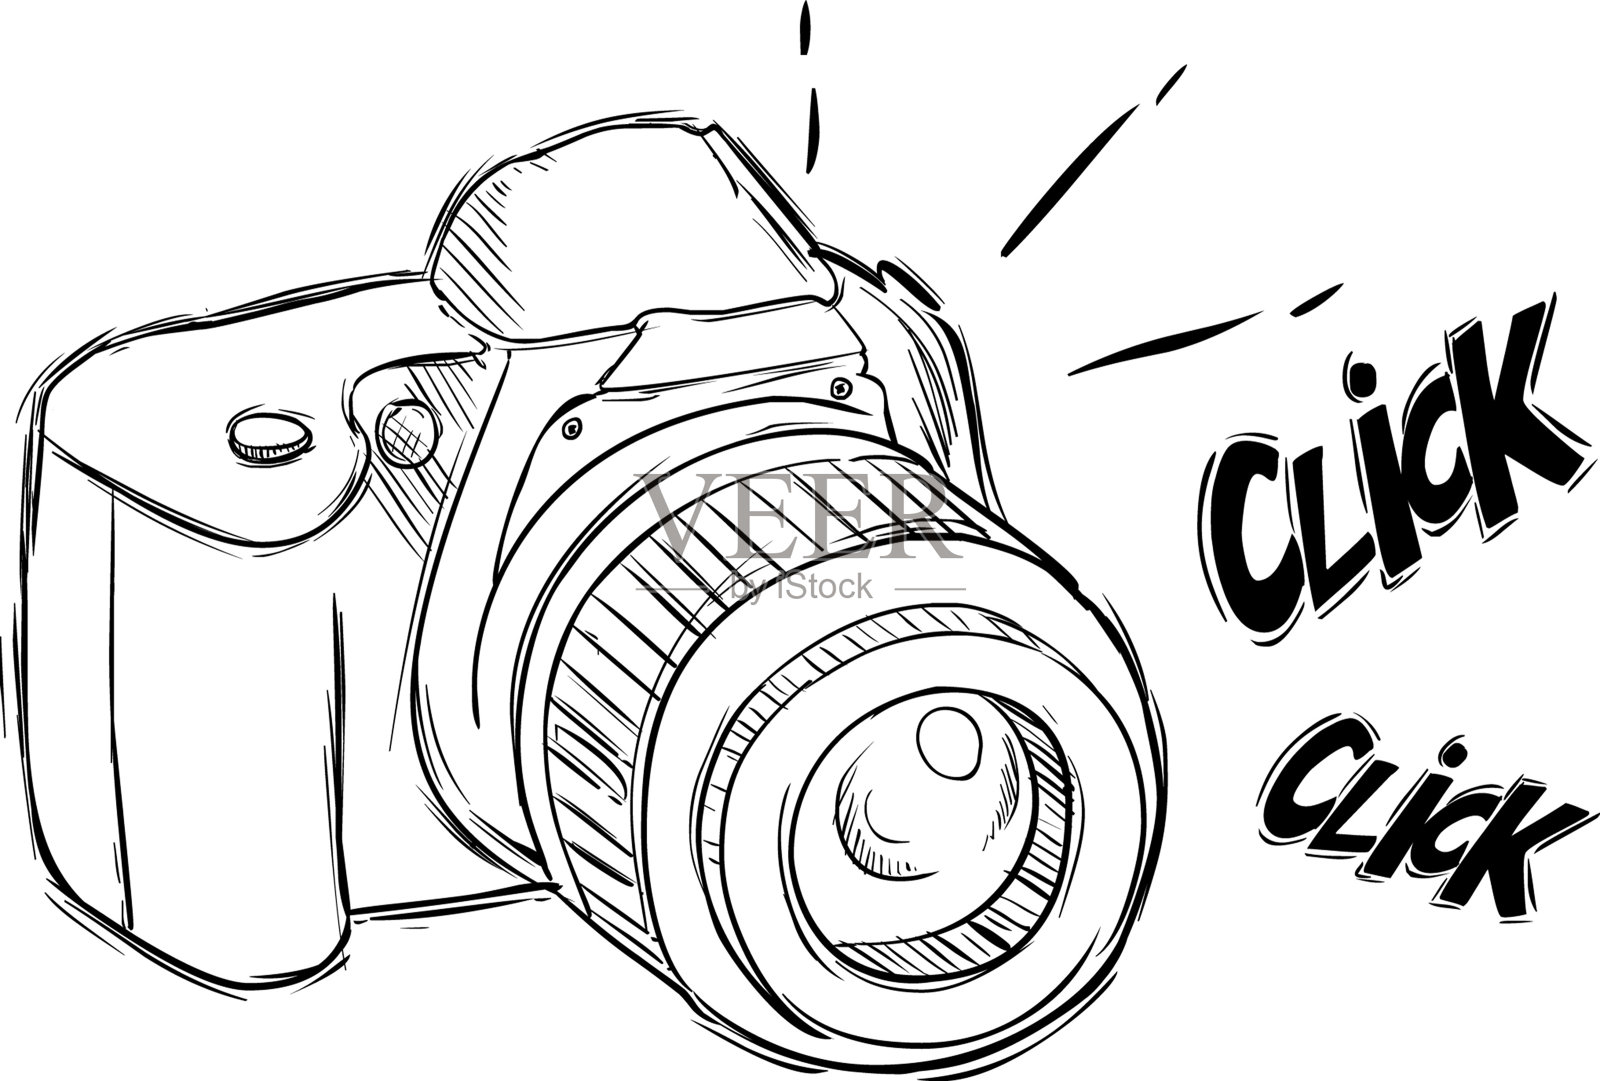 矢量插图的一个相机在草图风格(黑色和白色)设计元素图片